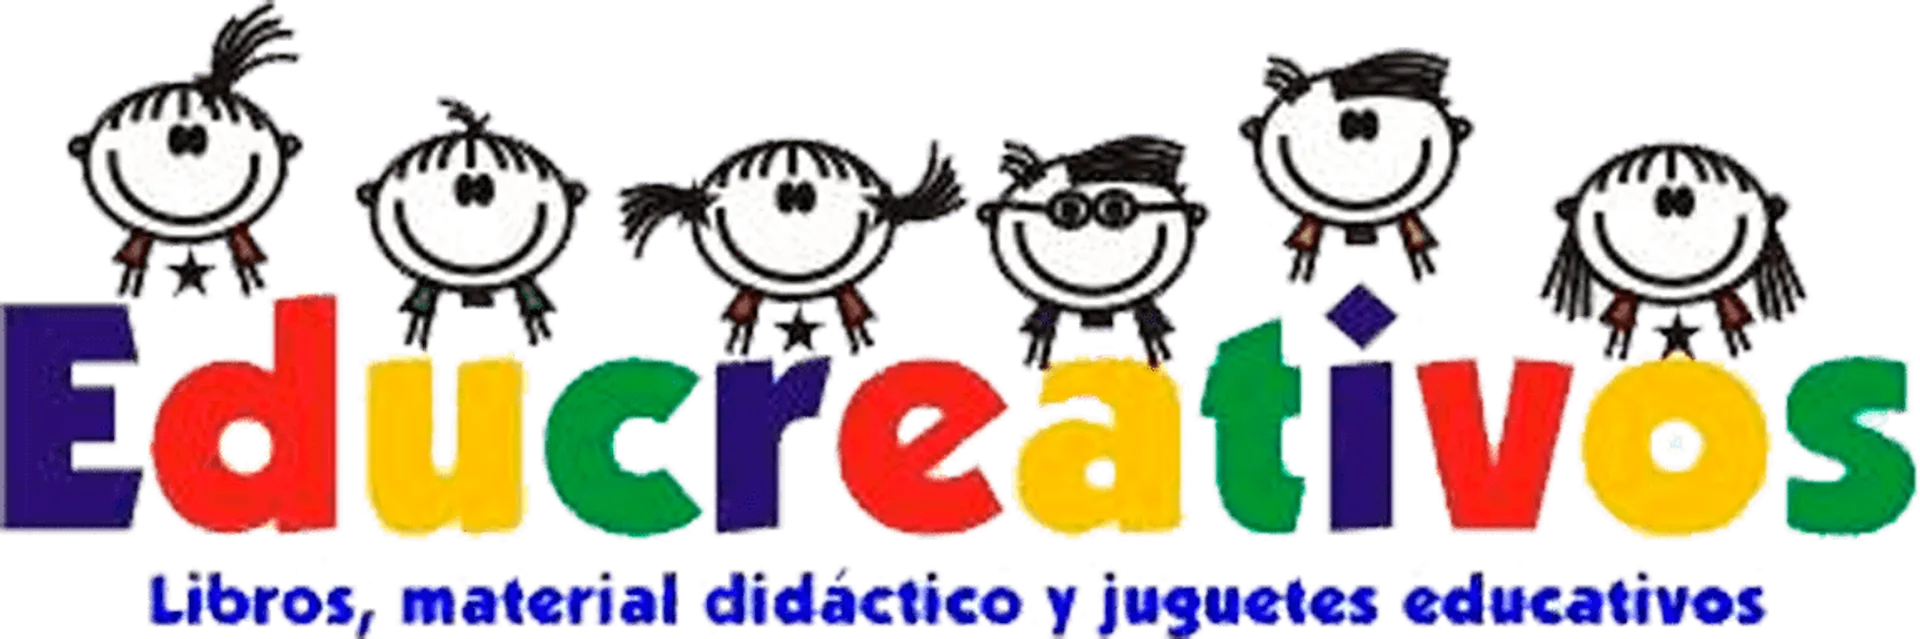 EDUCREATIVOS logo